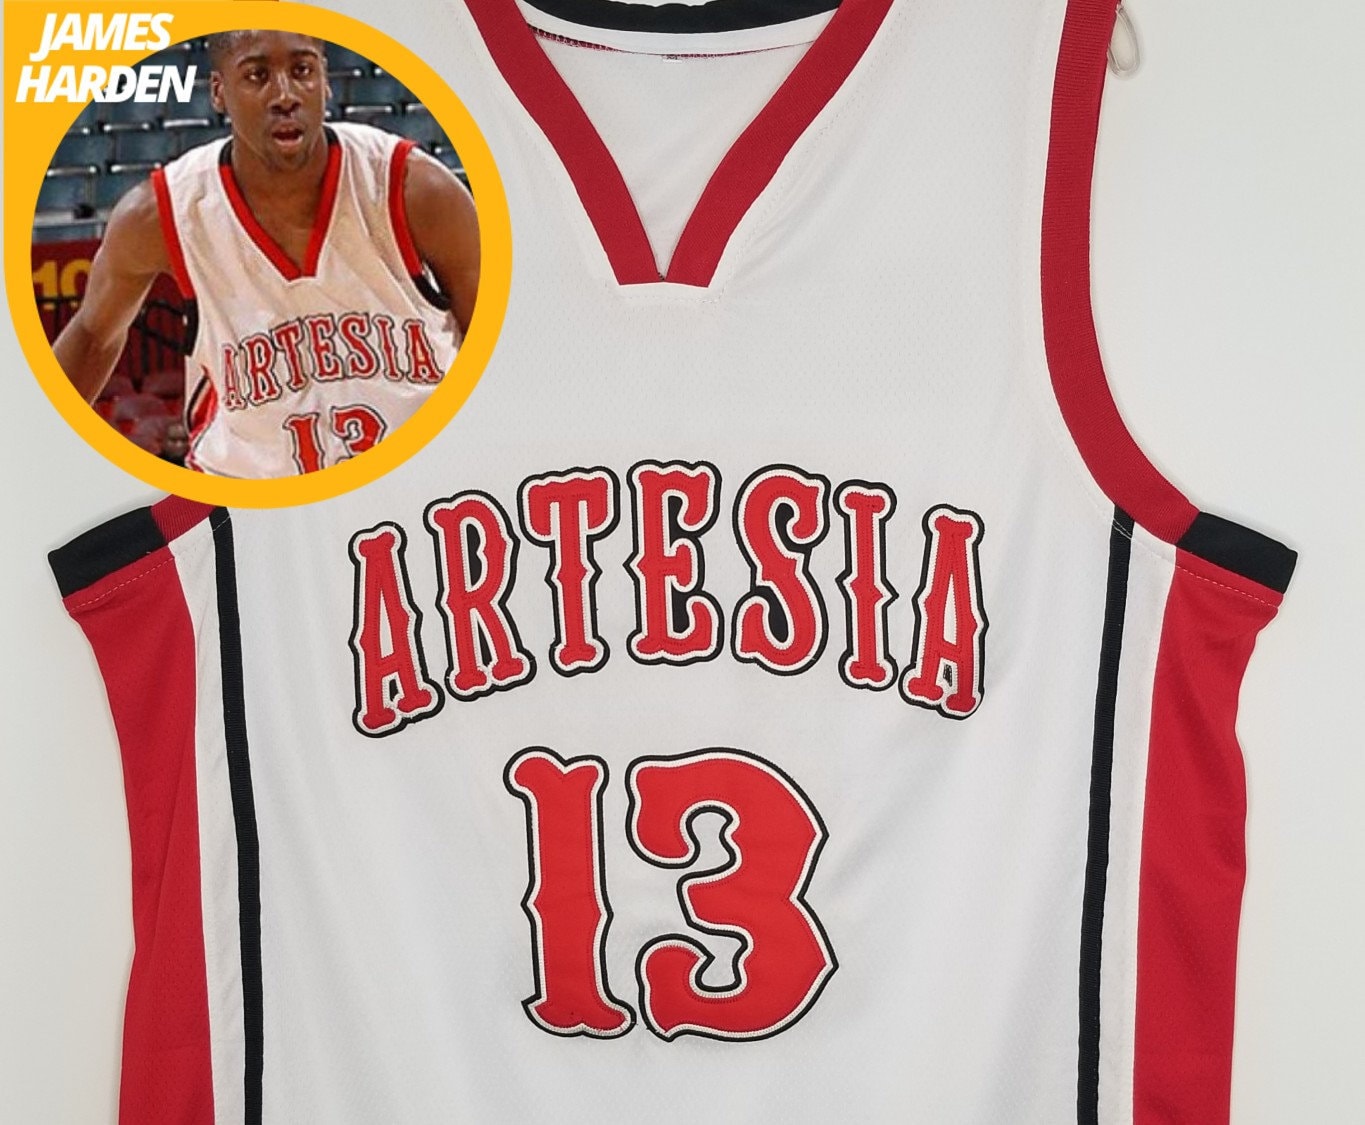 James Harden High School Basketball Jersey Artesia Blanco - Etsy México